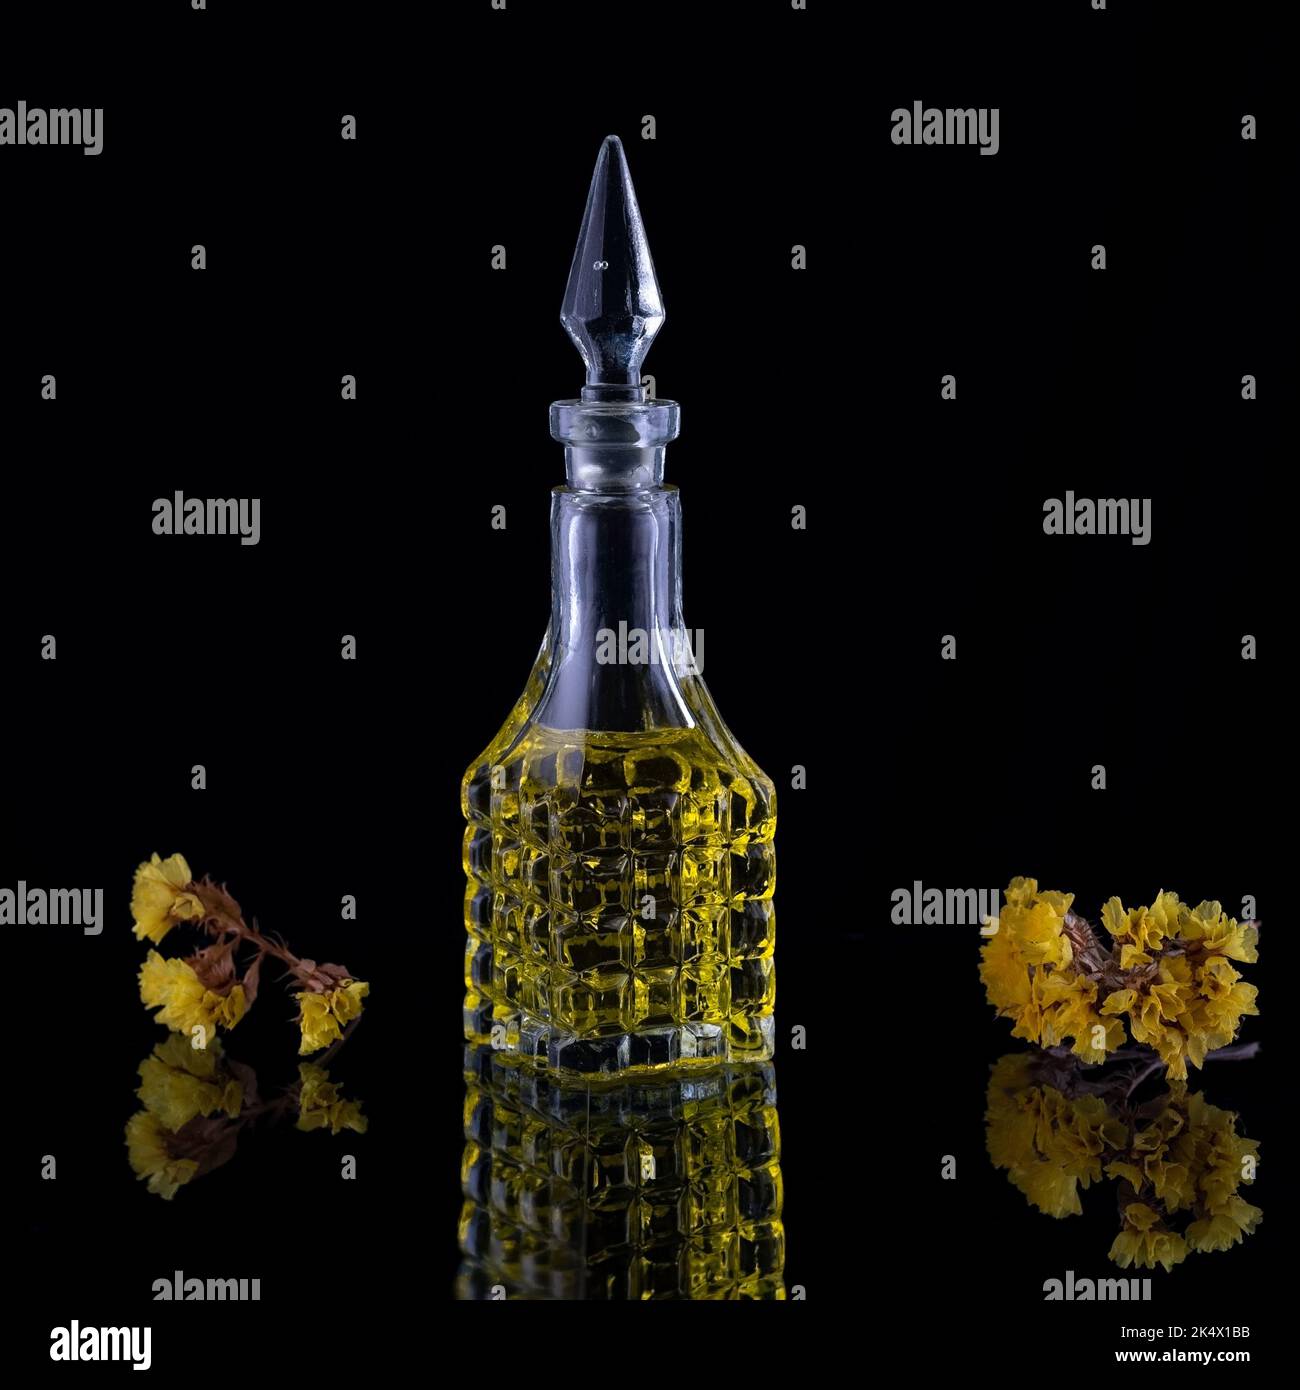 Parfümflaschen und vintage-duft bei nacht aromaduft duftende